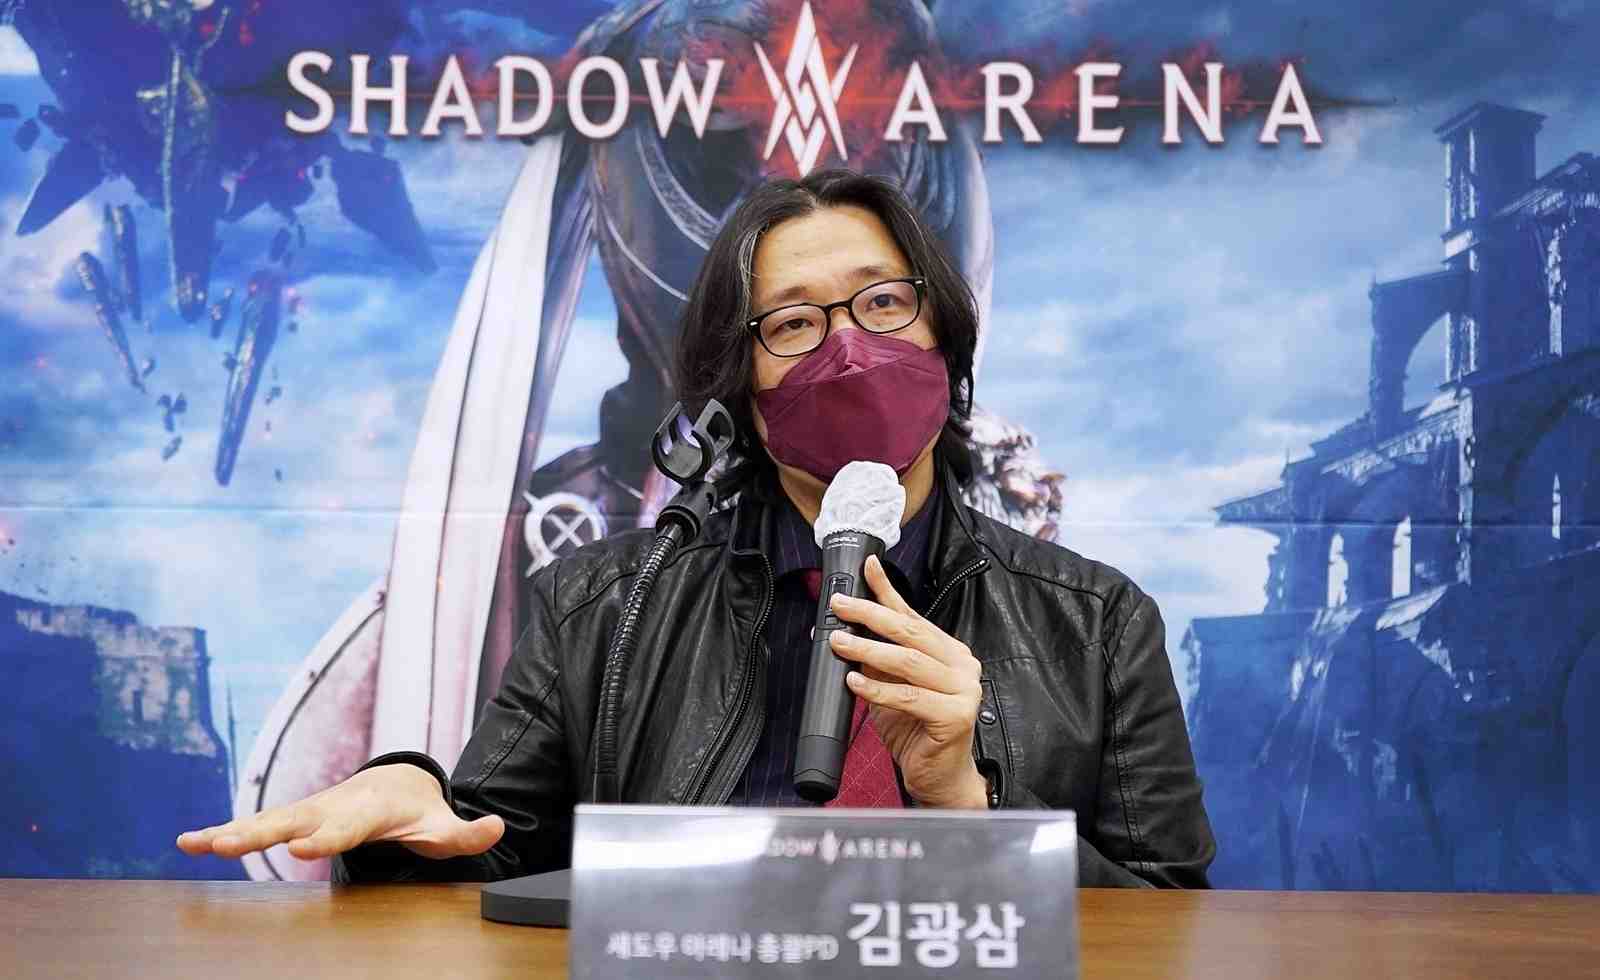 《影子戰場Shadow Arena》全球策略長Jeon Kwang-Bae的採訪文